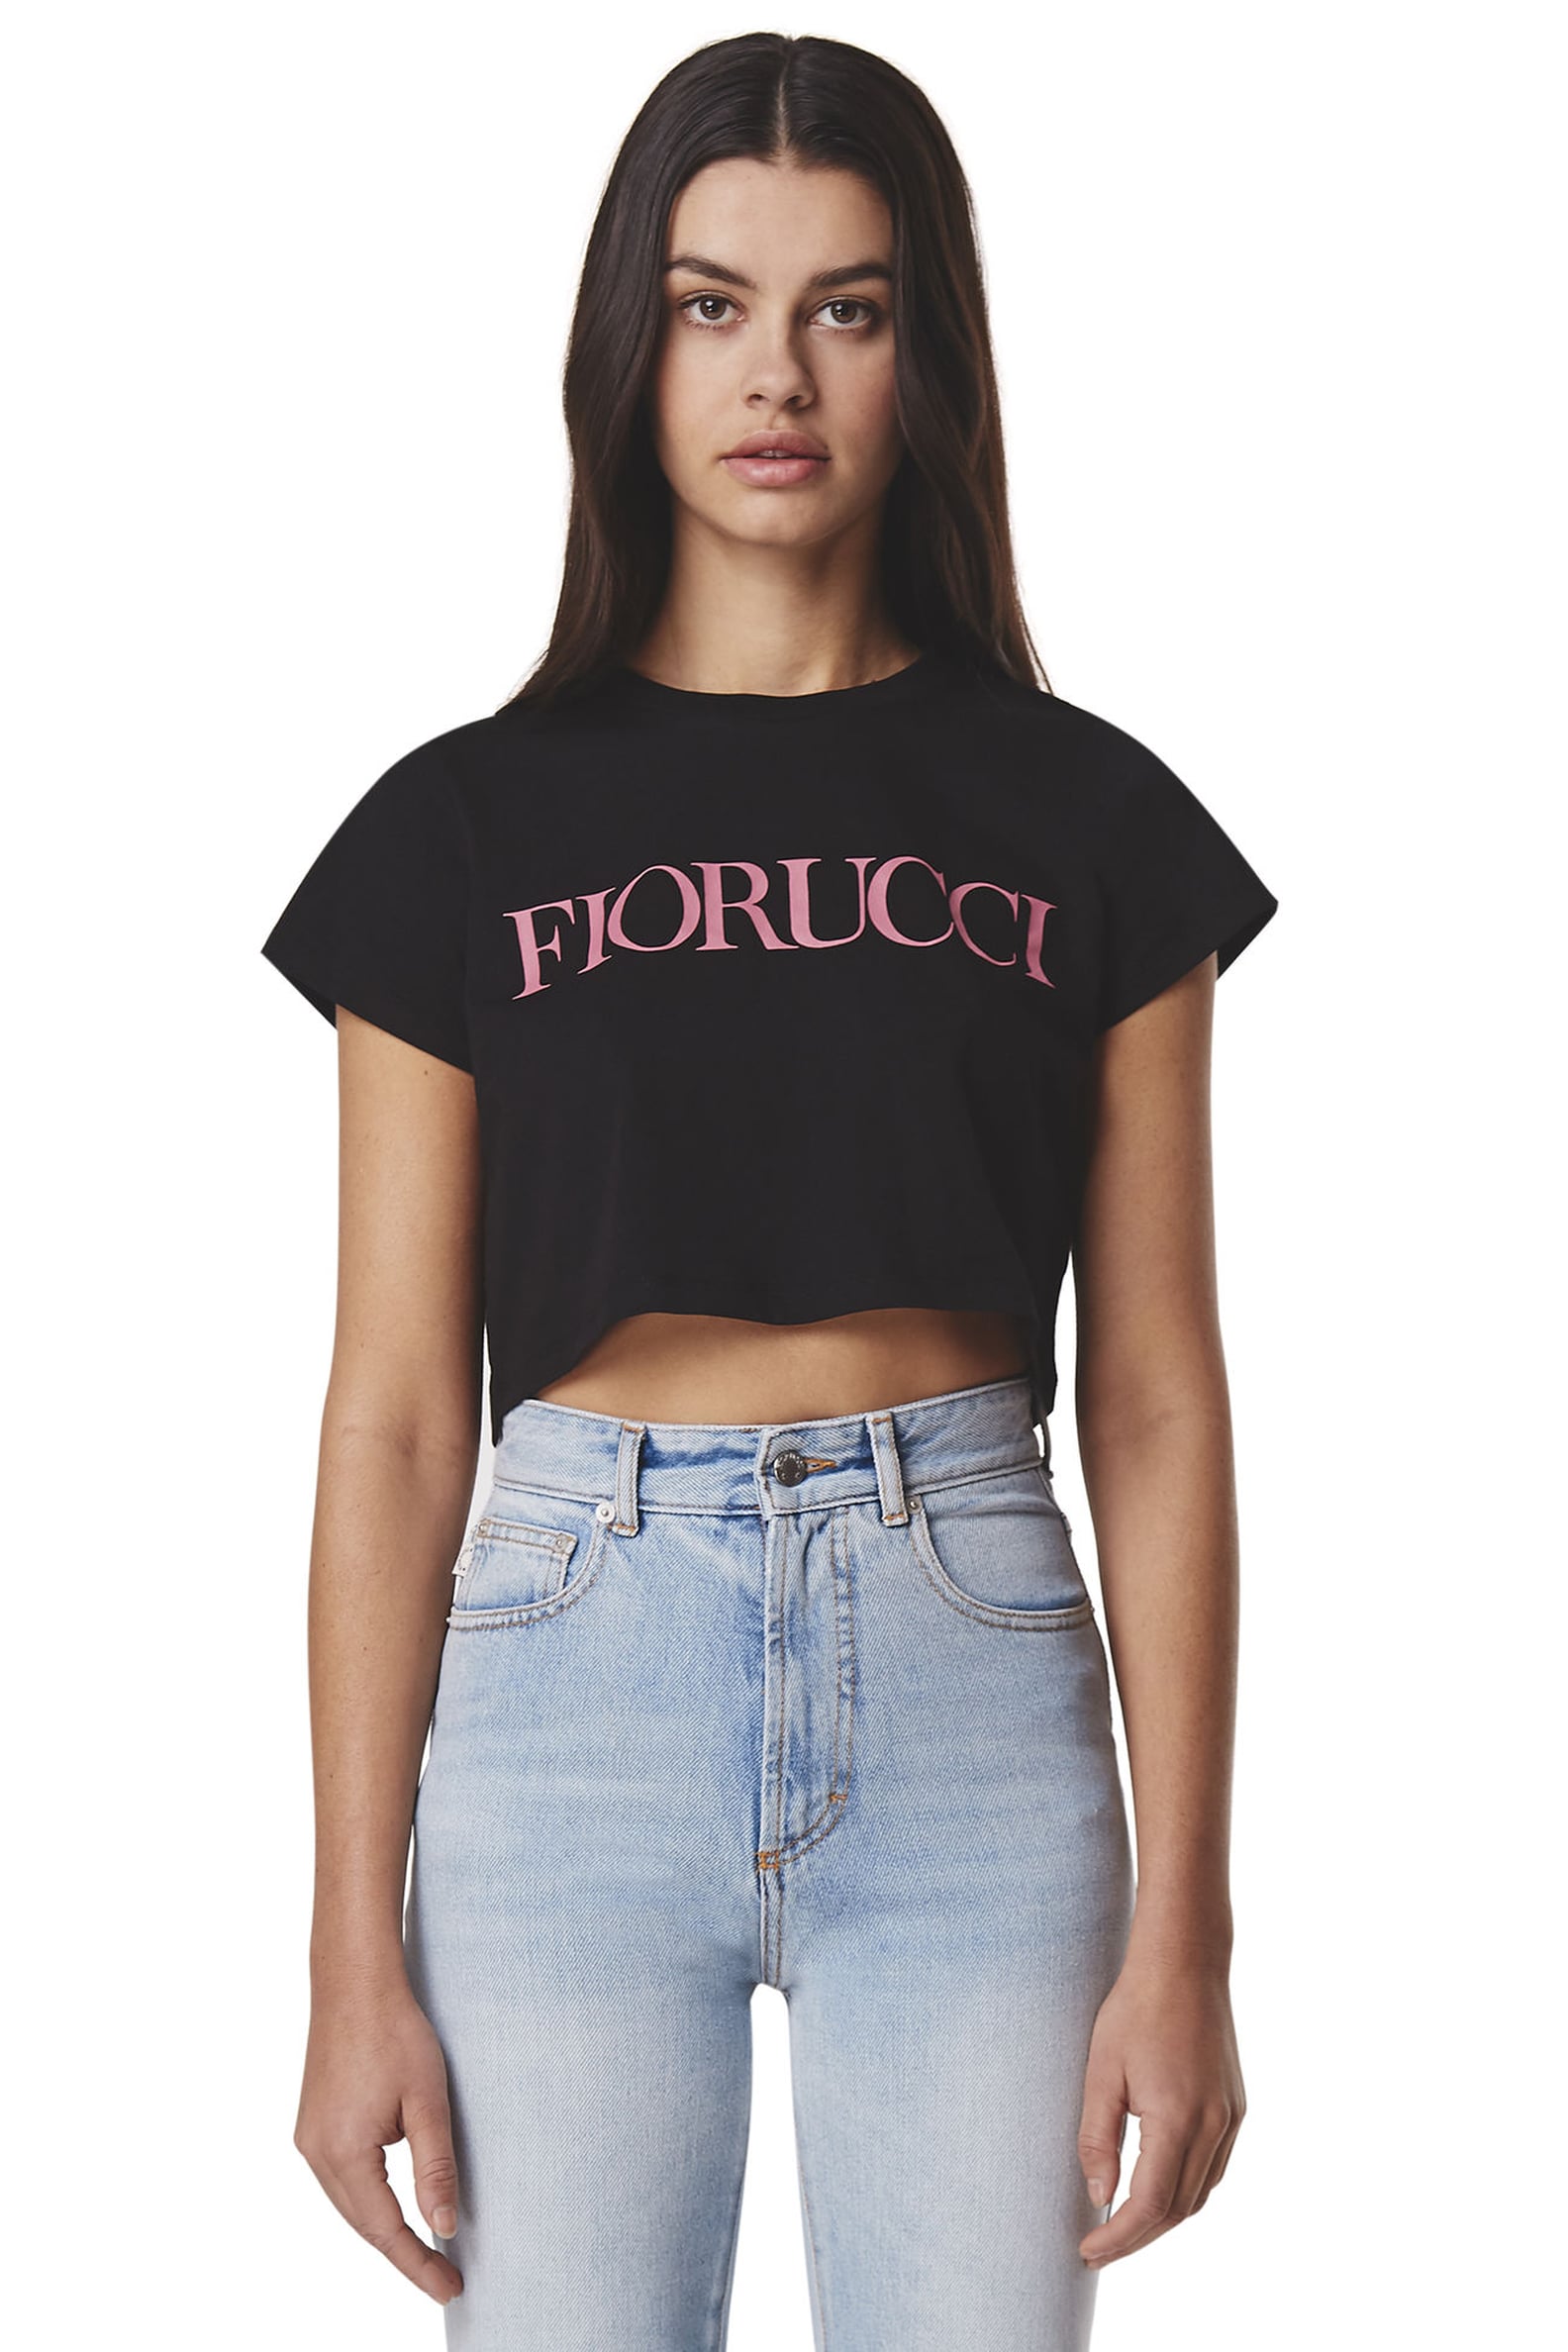 Best Fiorucci Clothing 2018 | POPSUGAR Fashion